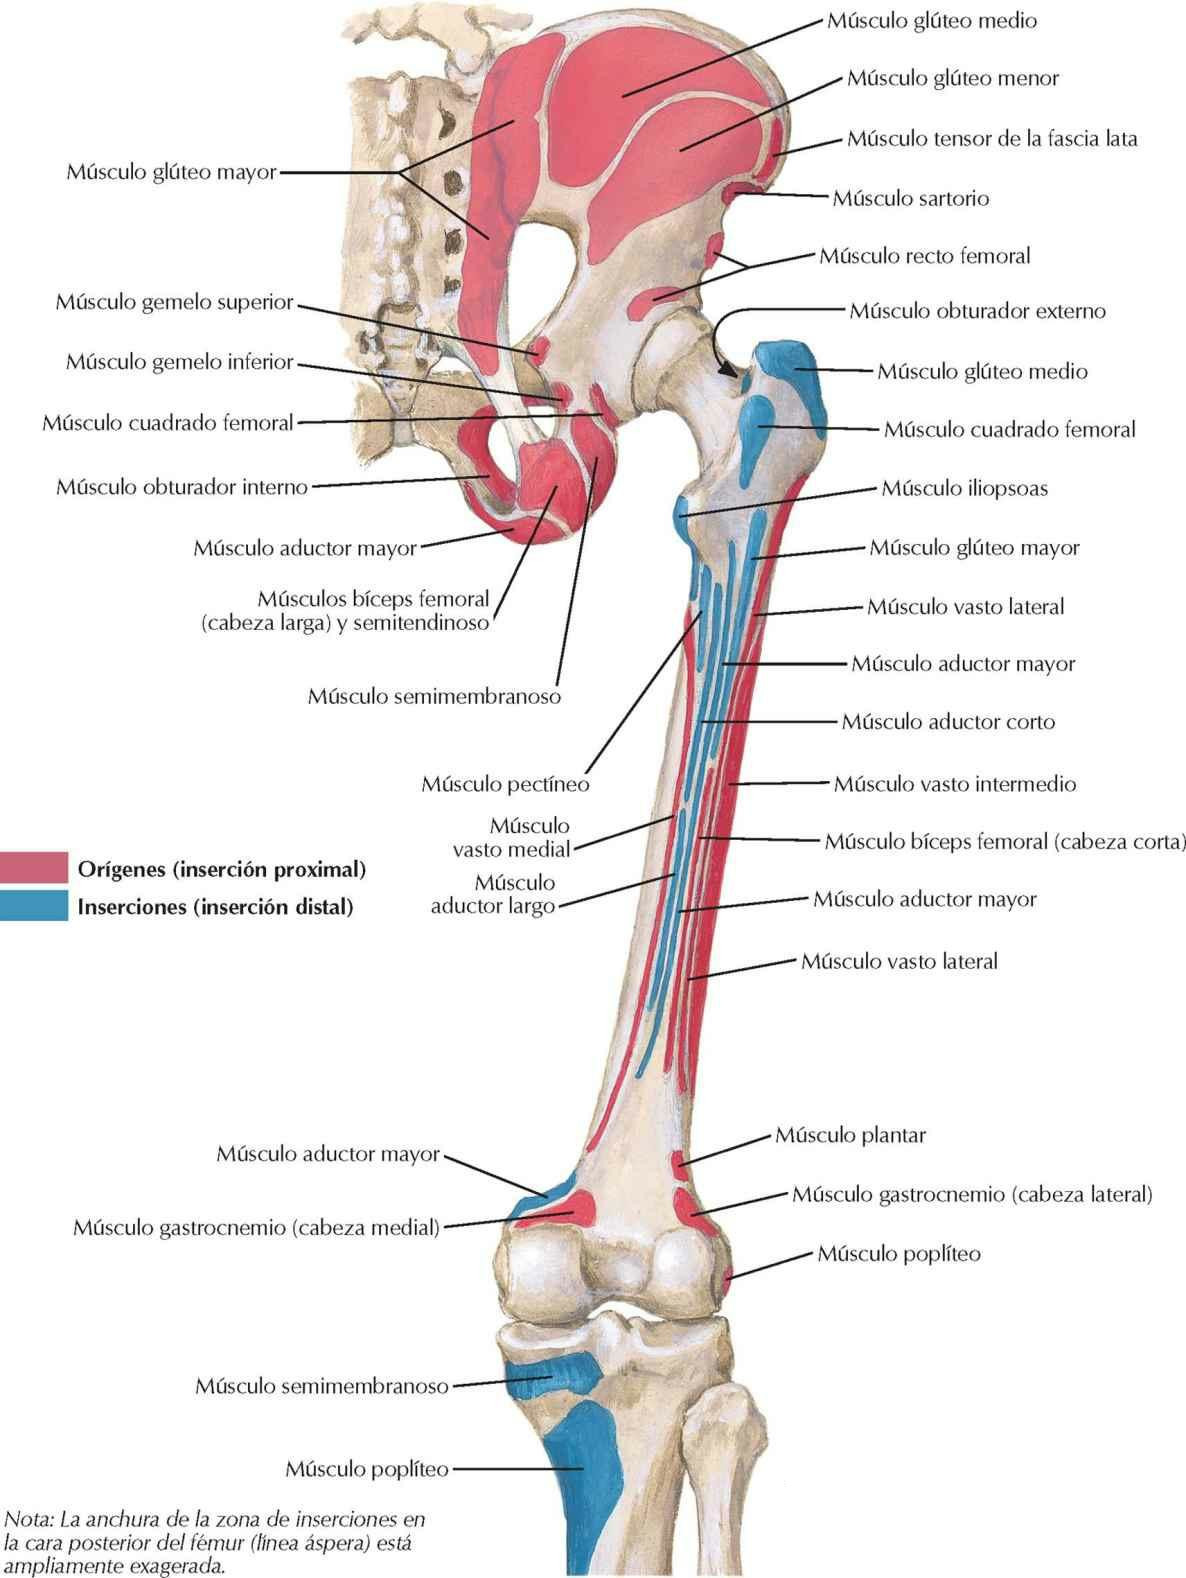 Inserciones óseas de los músculos de cadera y muslo: visión posterior